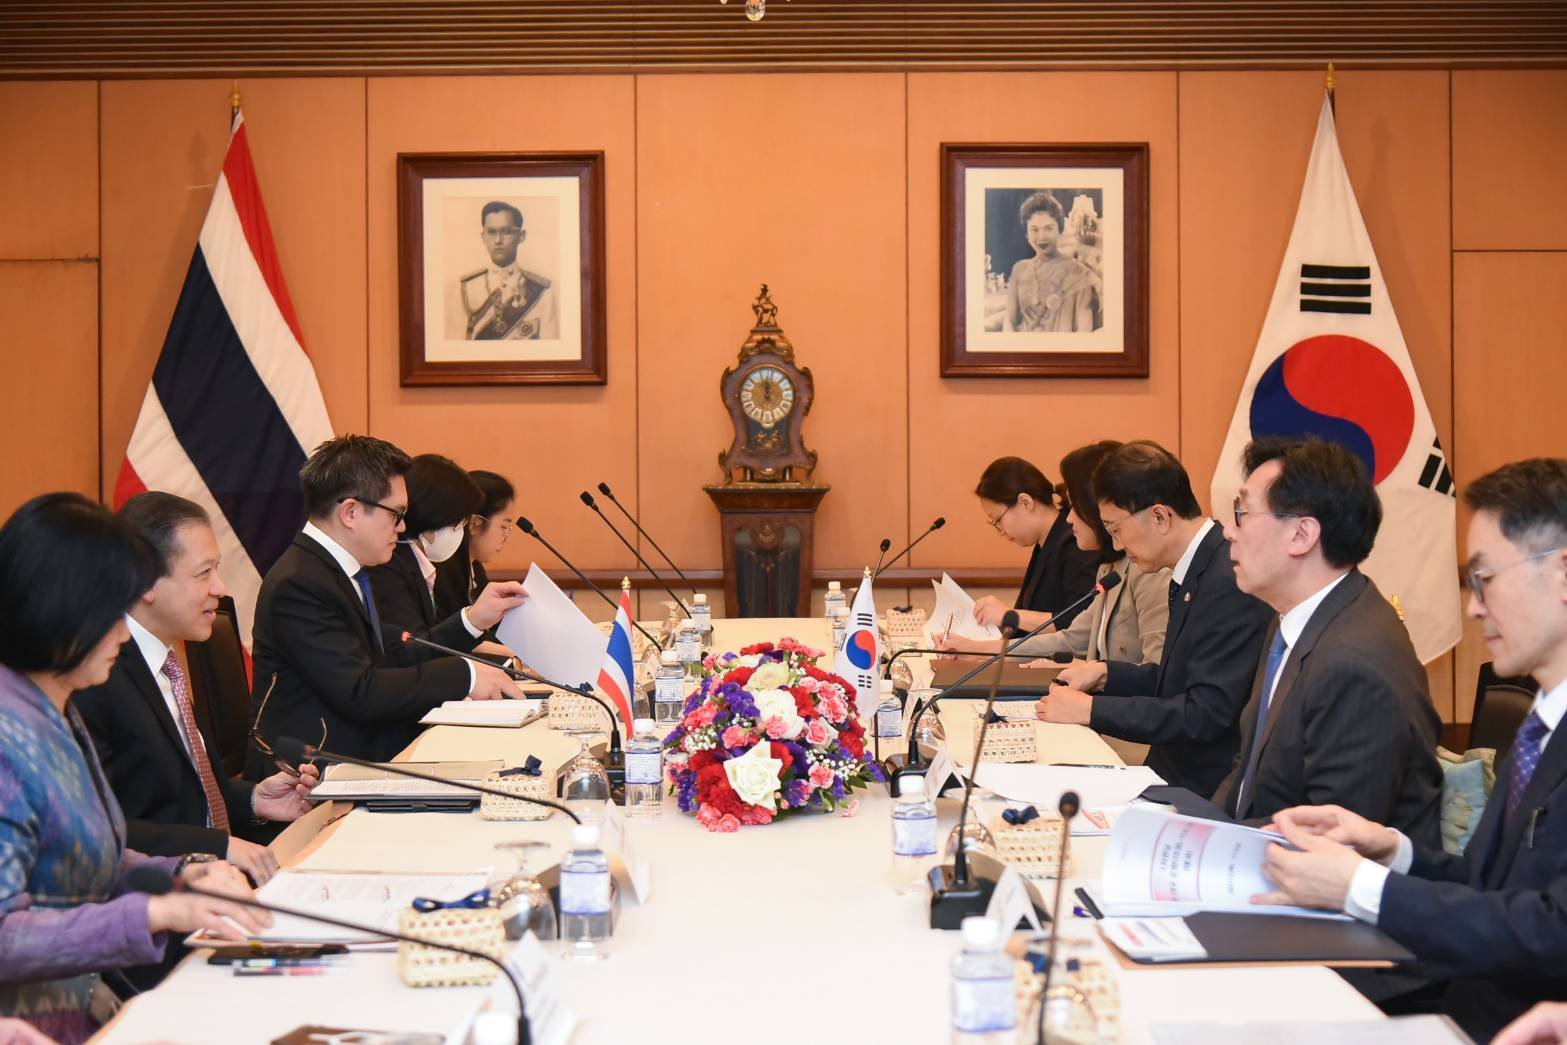 ประชุมประจำปี ระหว่างปลัดกระทรวงการต่างประเทศไทยและเกาหลีใต้ เมื่อวันที่ 3 พ.ย. 66 